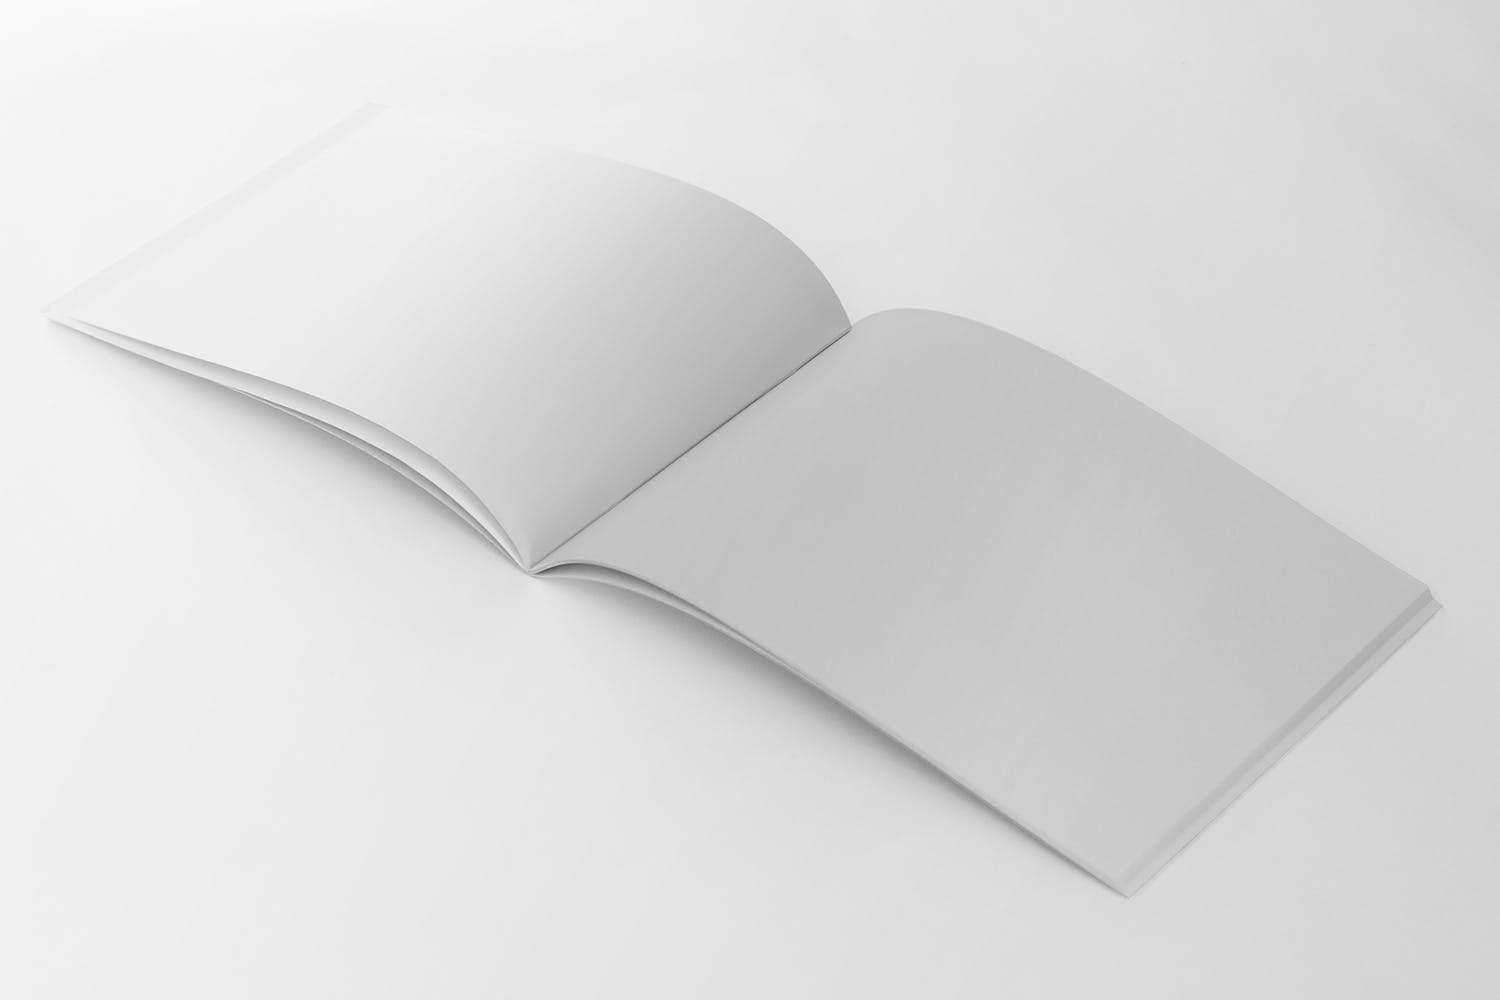 美国信纸规格宣传册内页透视图样机蚂蚁素材精选 US Half Letter Brochure Mockup Perspective View插图(1)